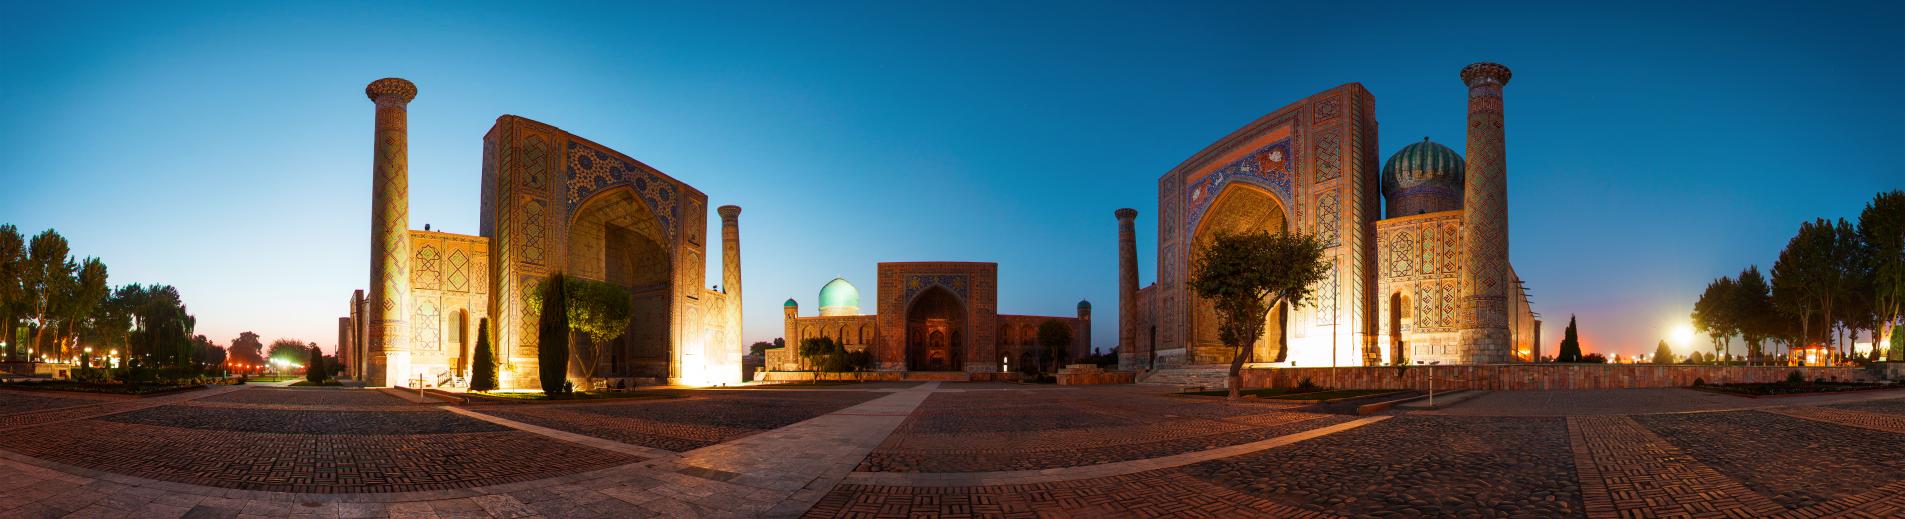 Piazza Registan Samarkand